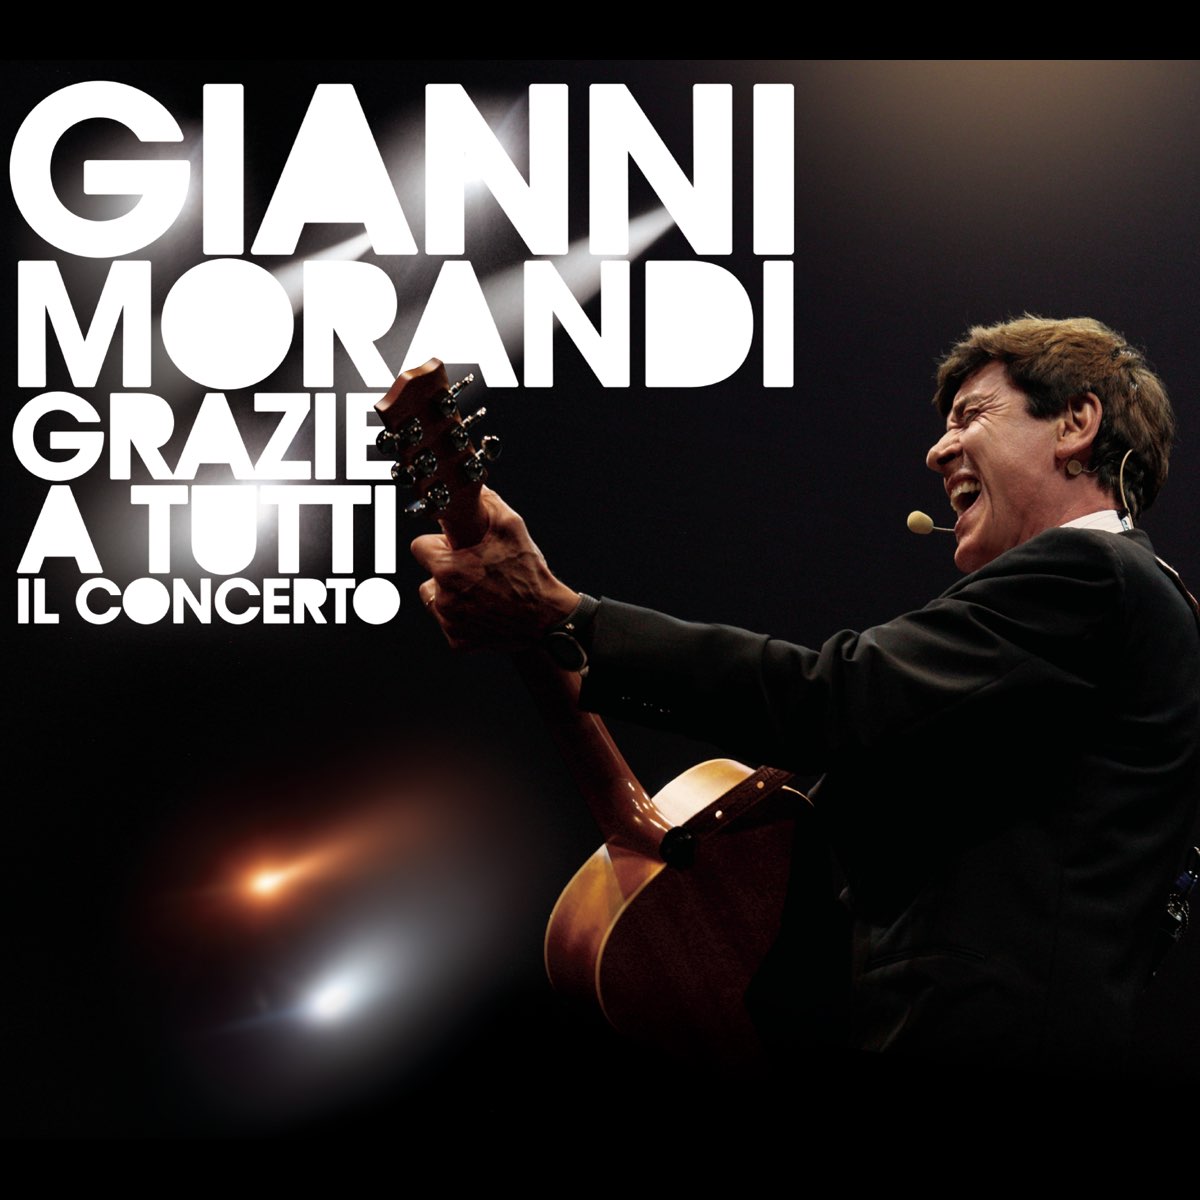 Grazie a tutti il concerto (Live) by Gianni Morandi on Apple Music